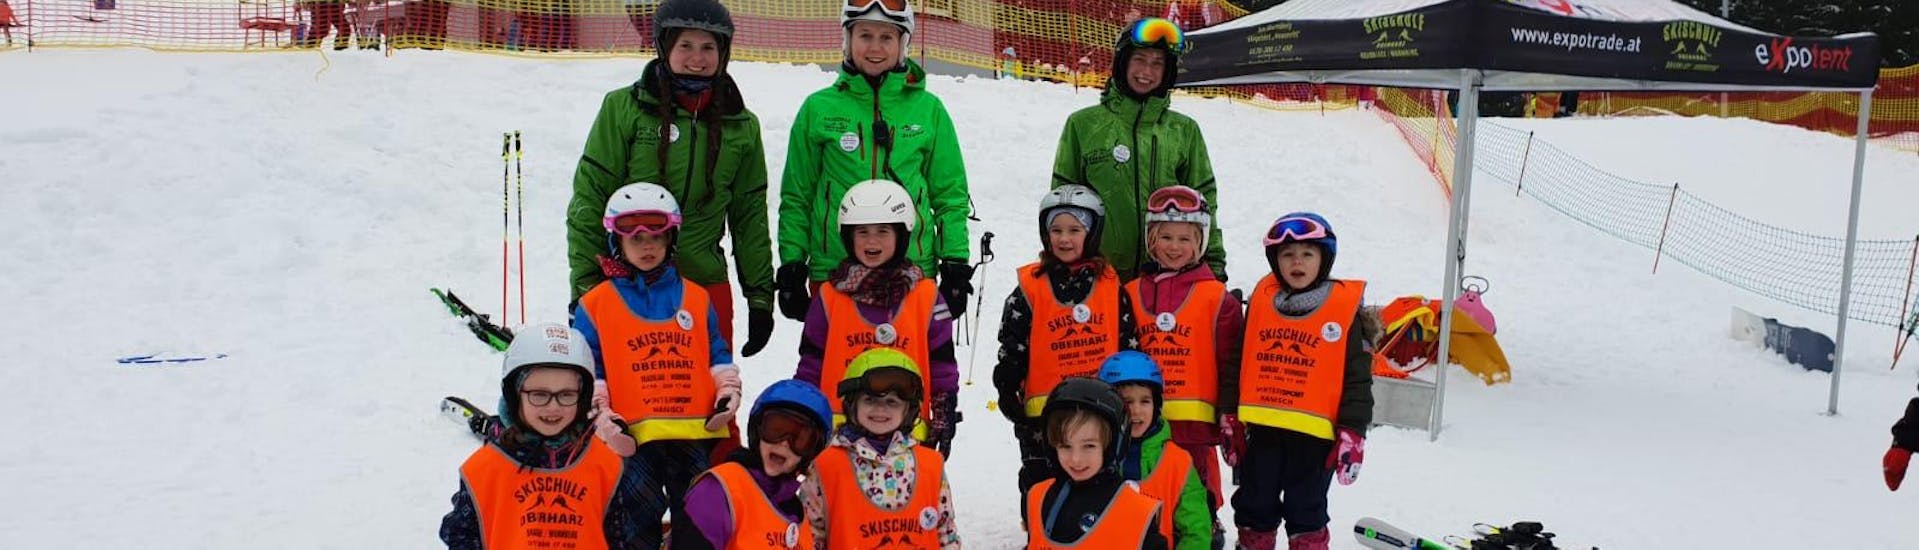 Clases de esquí para niños a partir de 6 años con experiencia con Skischule Oberharz.